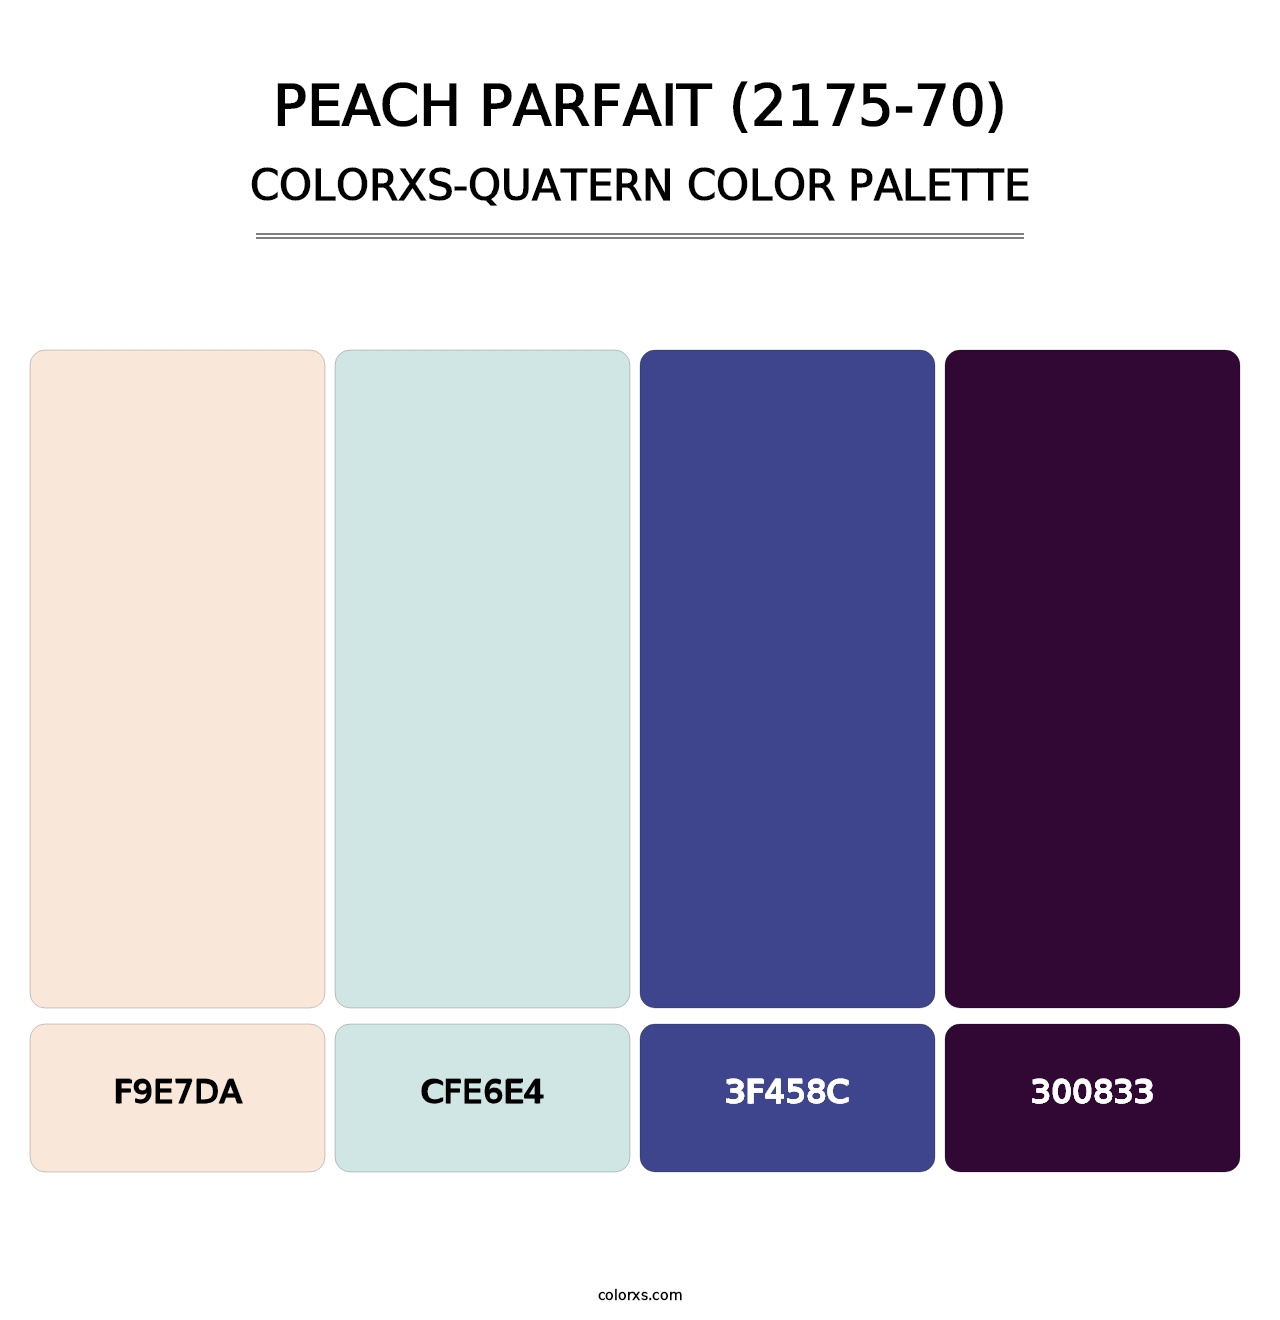 Peach Parfait (2175-70) - Colorxs Quatern Palette